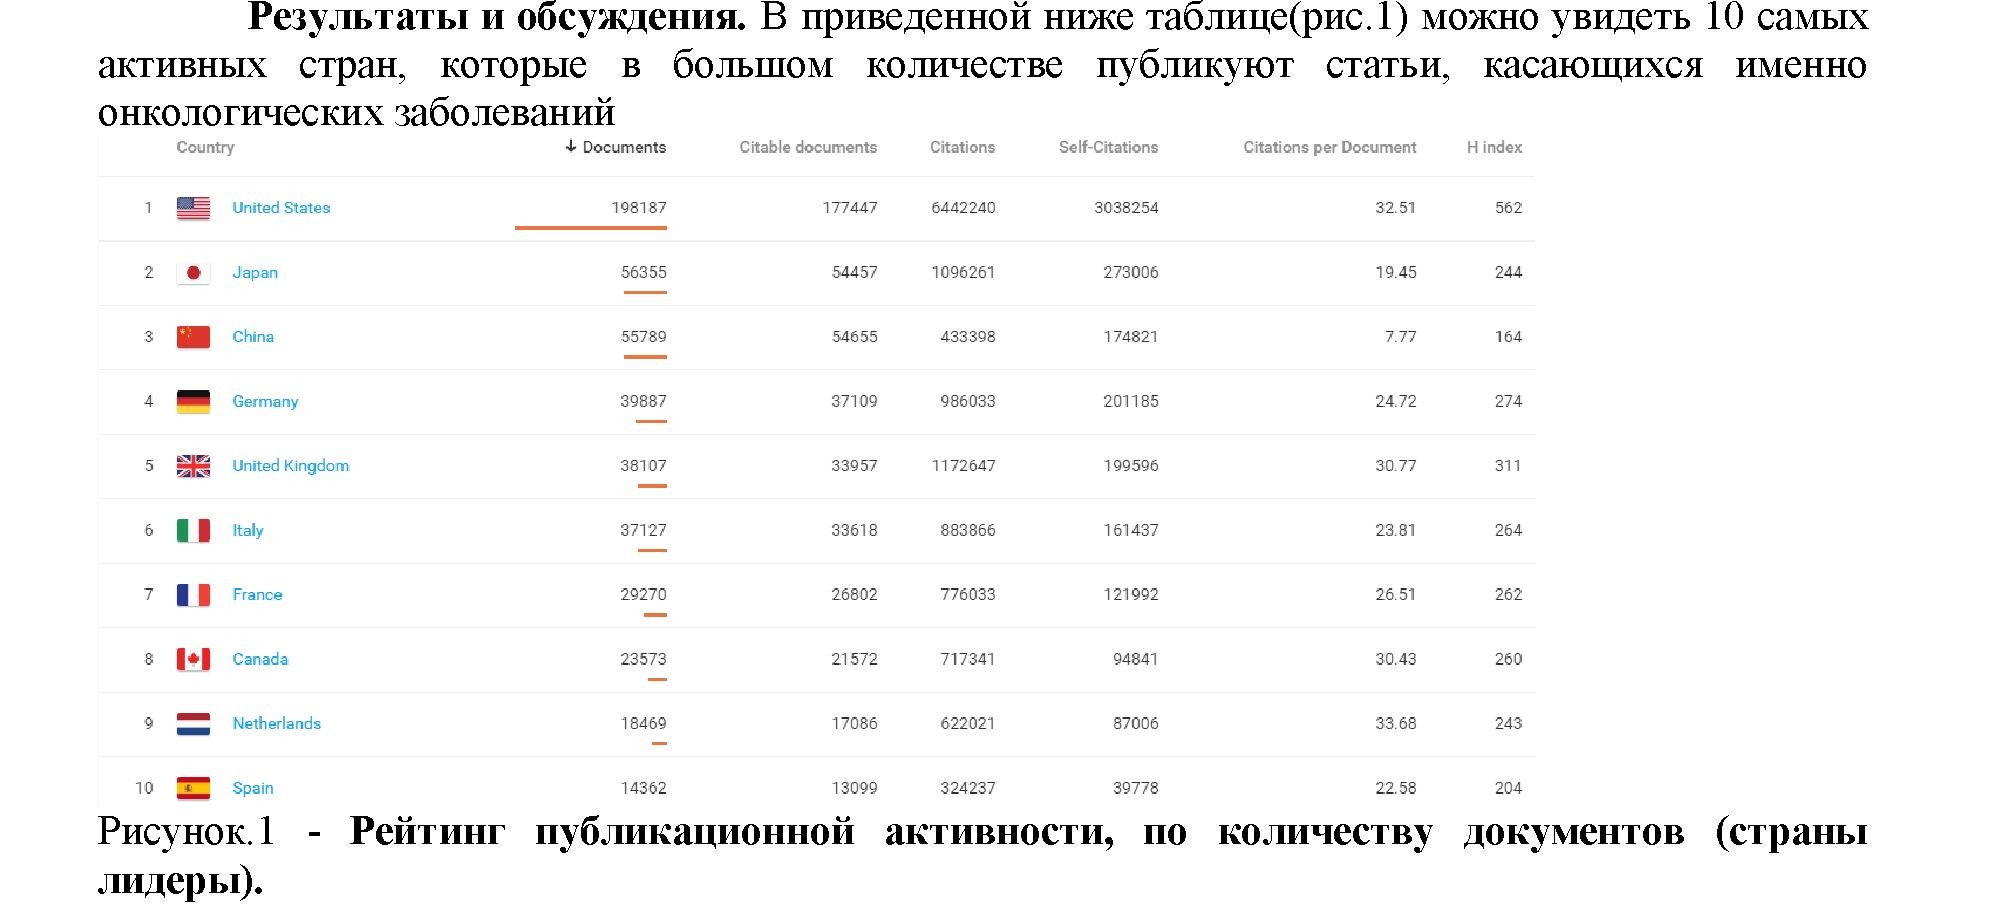 Показатели научно-публикационной активности ученых республики Казахстан в онкологической области медицины